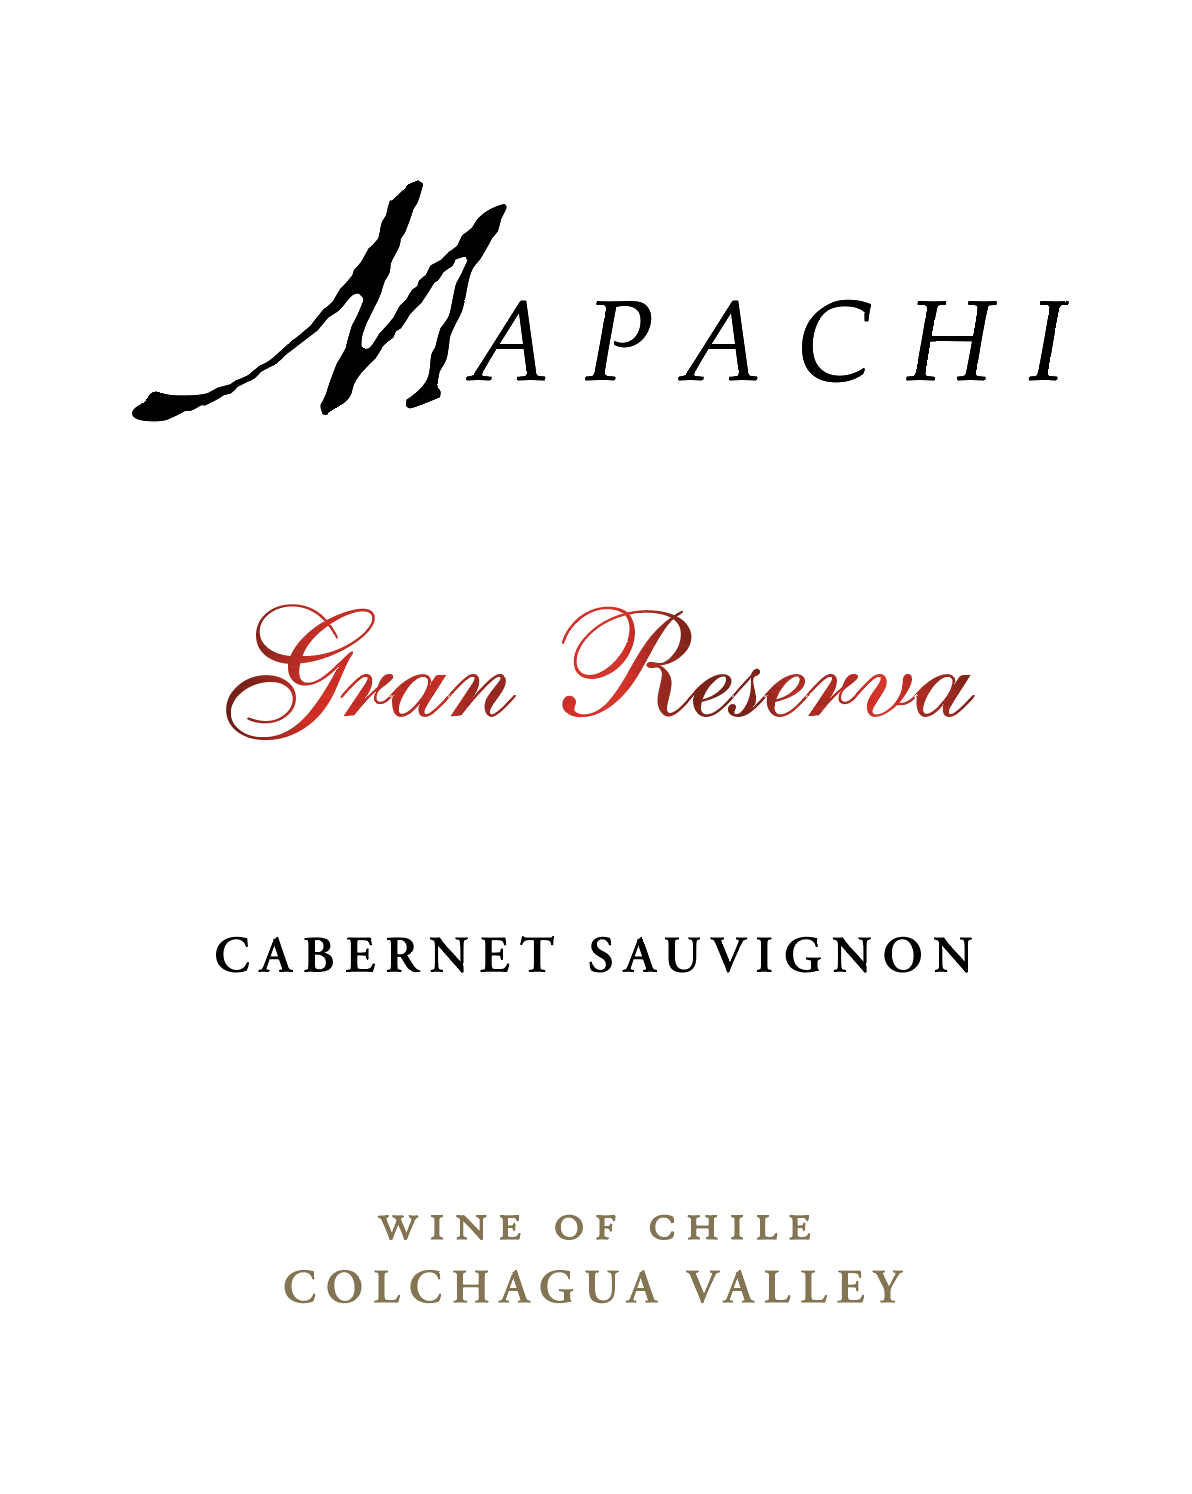 Mapachi Cabernet Sauvignon Gran Reserva 2021